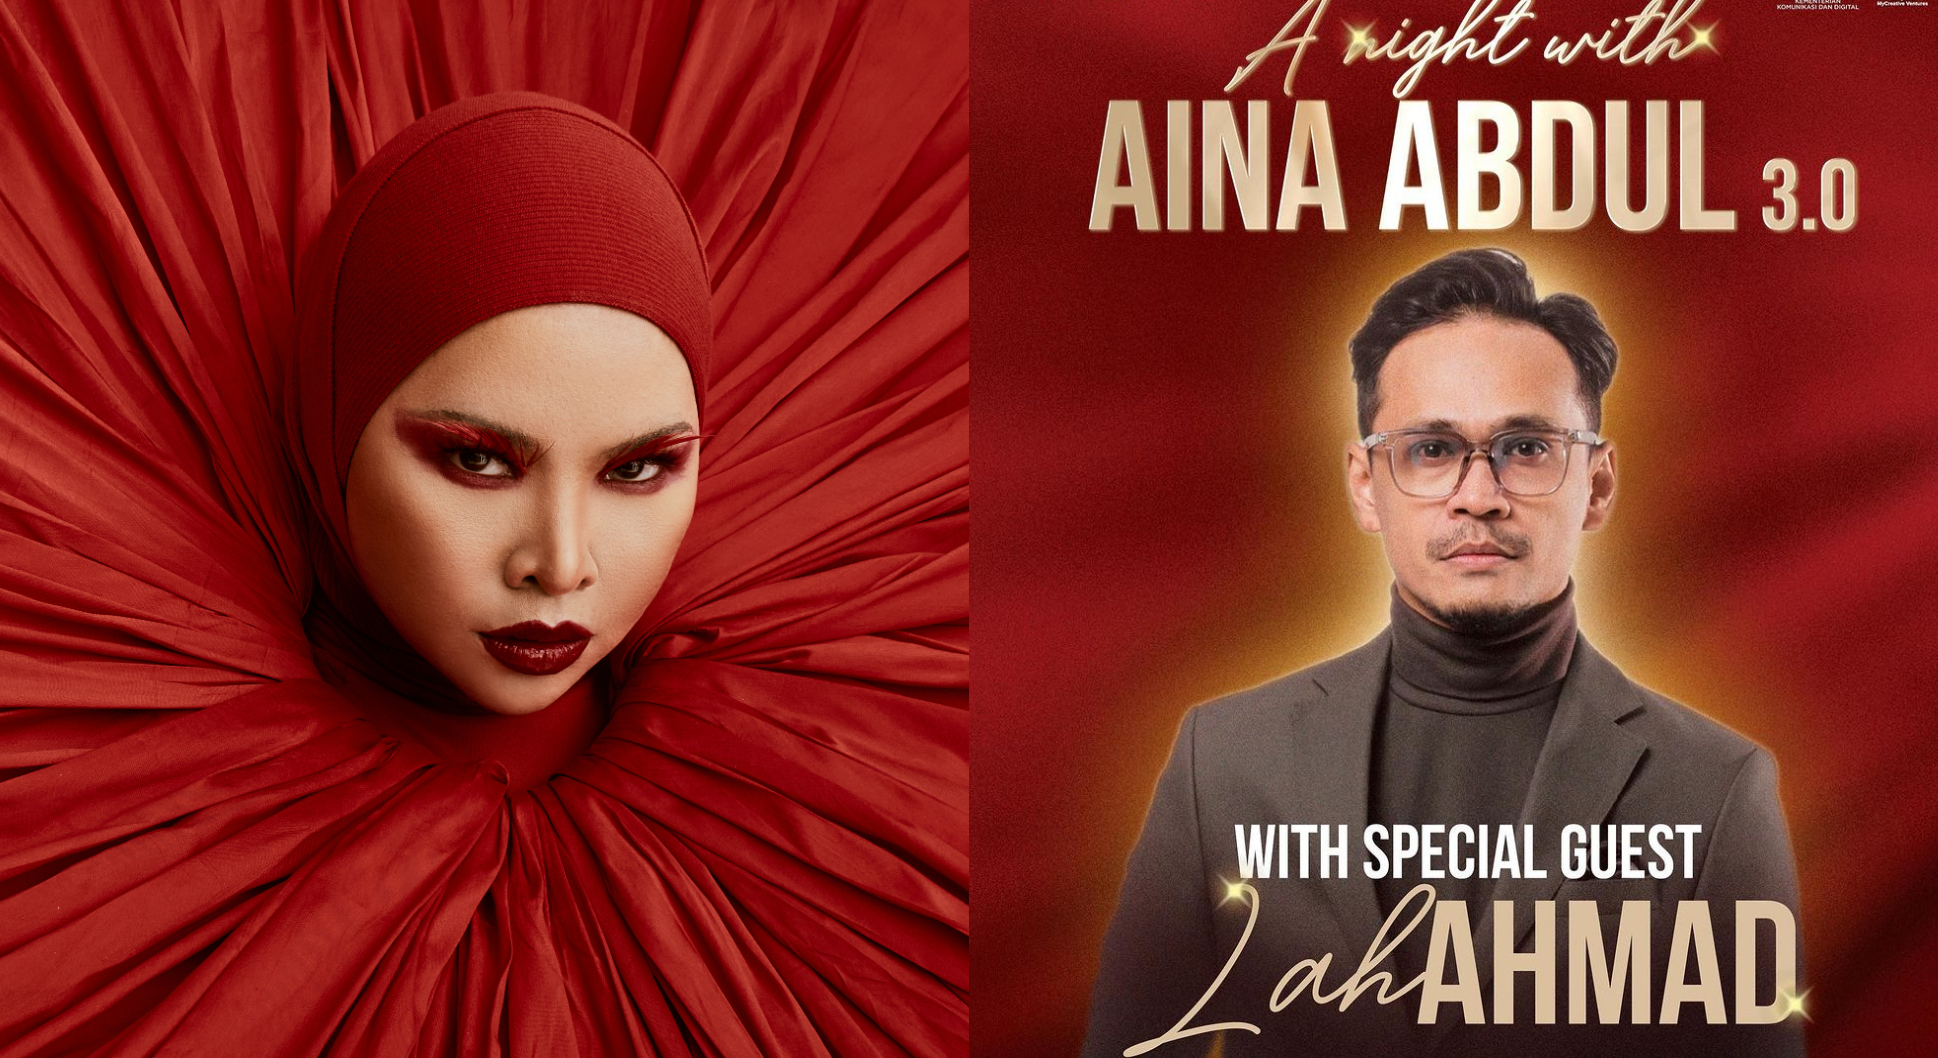 Penampilan khas Lah Ahmad pada konsert Aina Abdul Sabtu depan